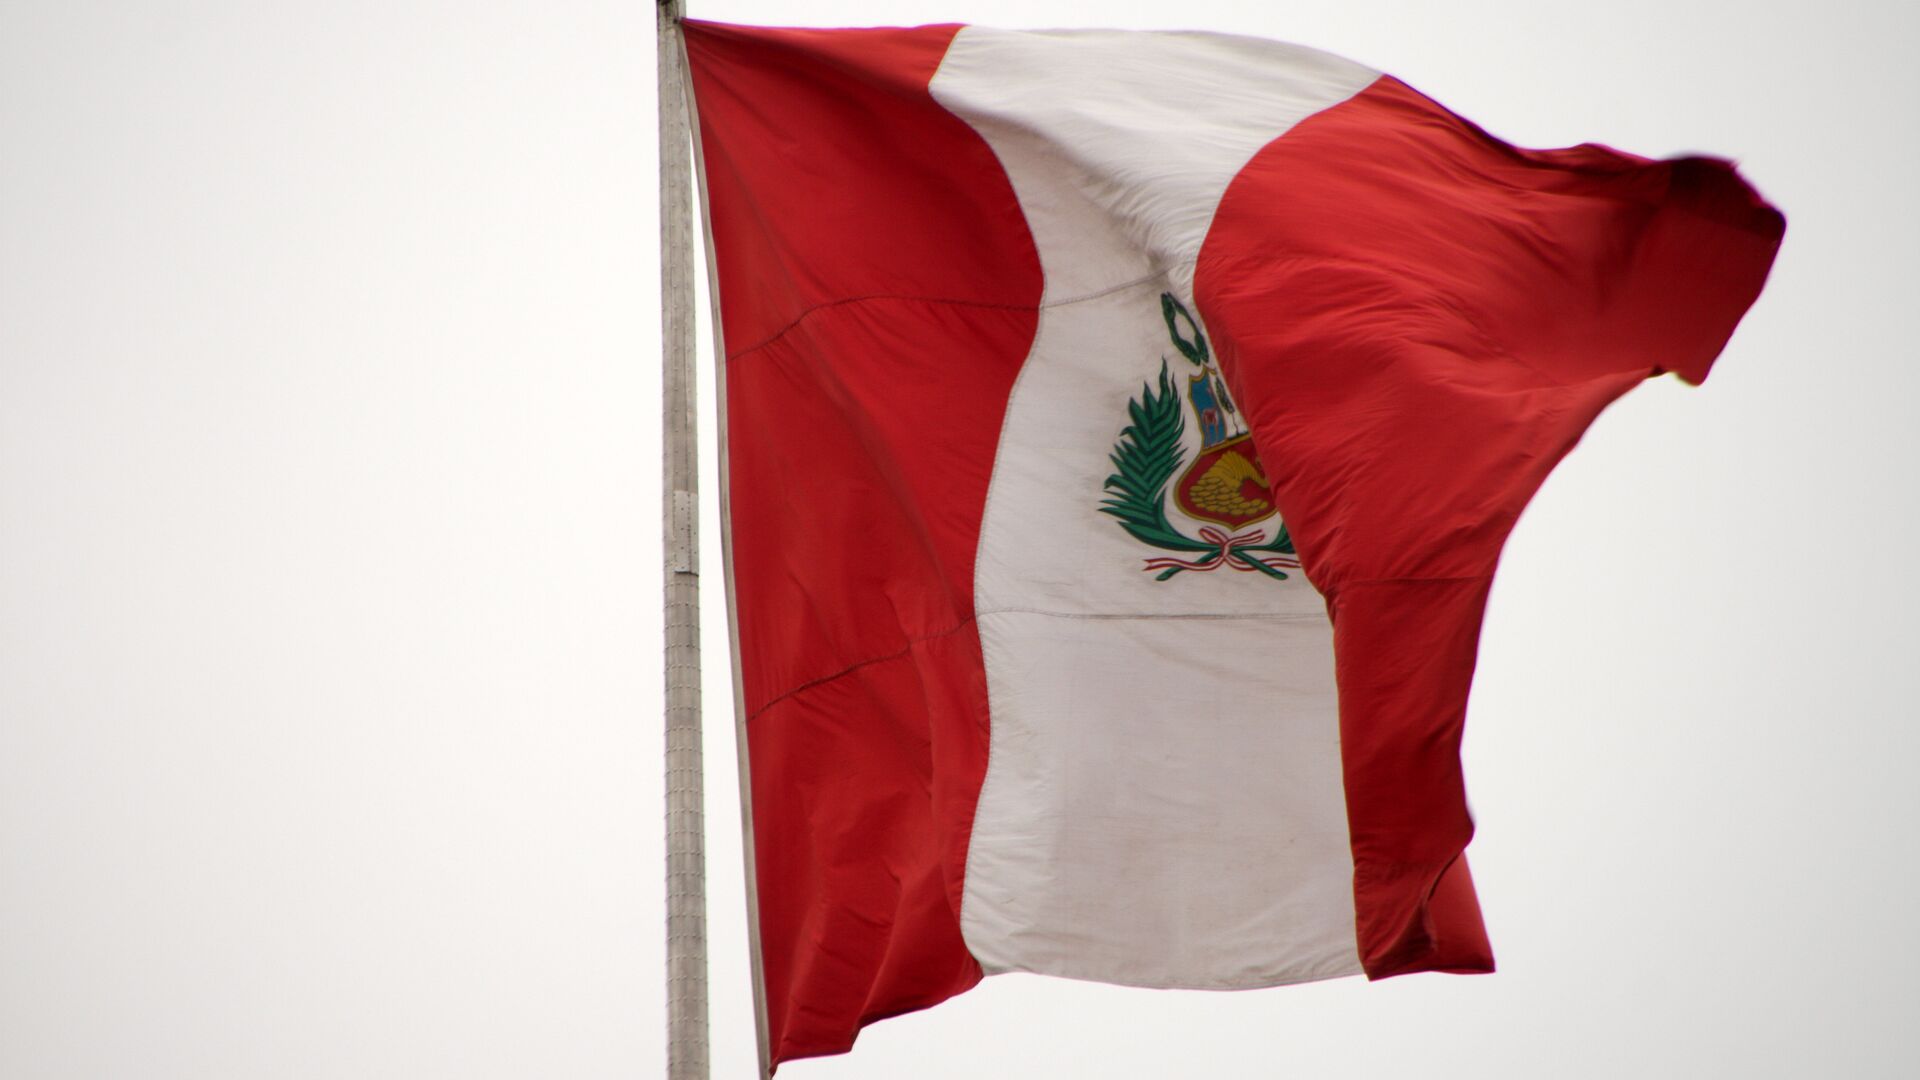 La bandera de Perú - Sputnik Mundo, 1920, 17.03.2021